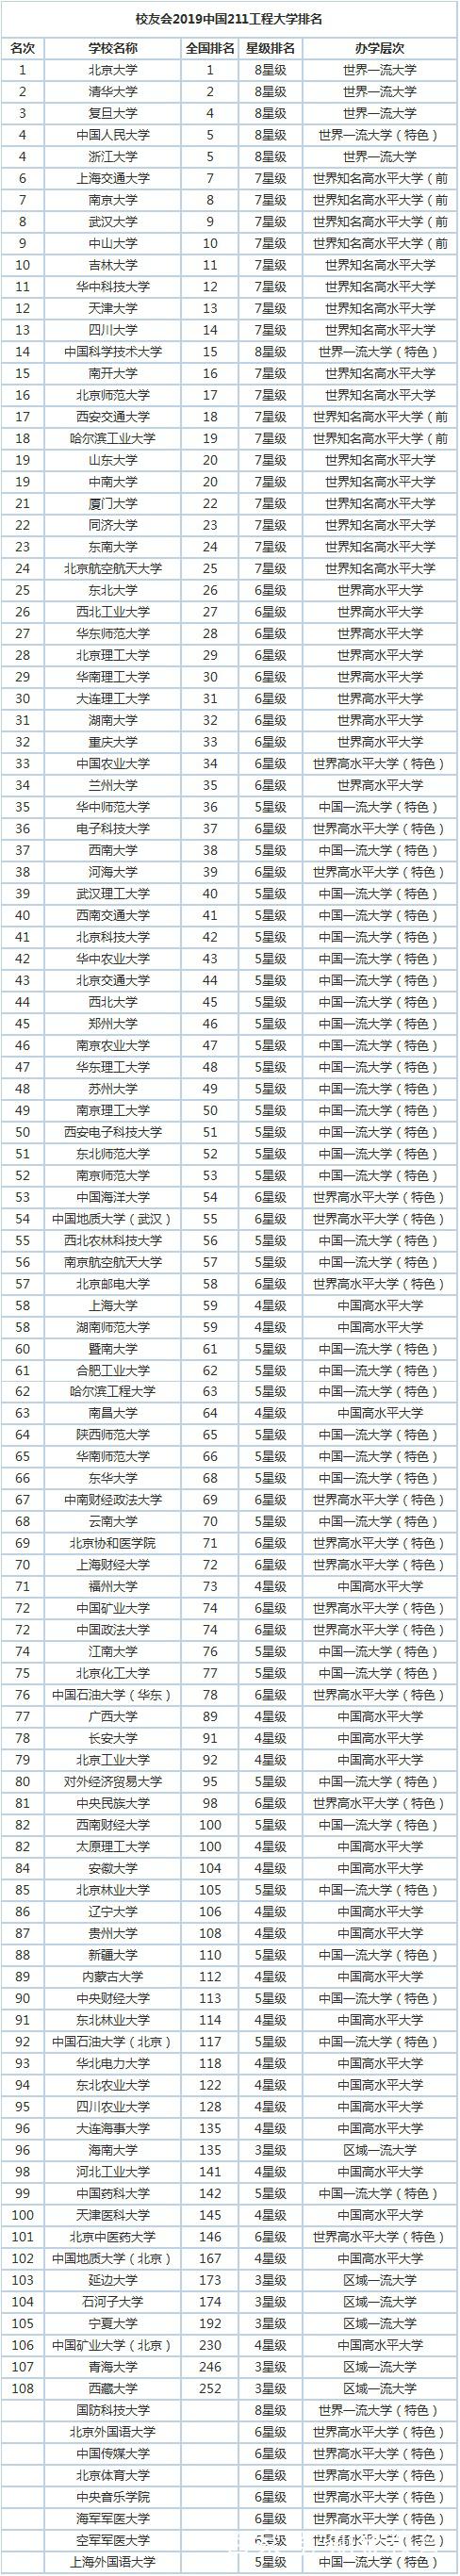 211高校排行榜_中国211高校深造率和保研率排行榜：第1没有想到